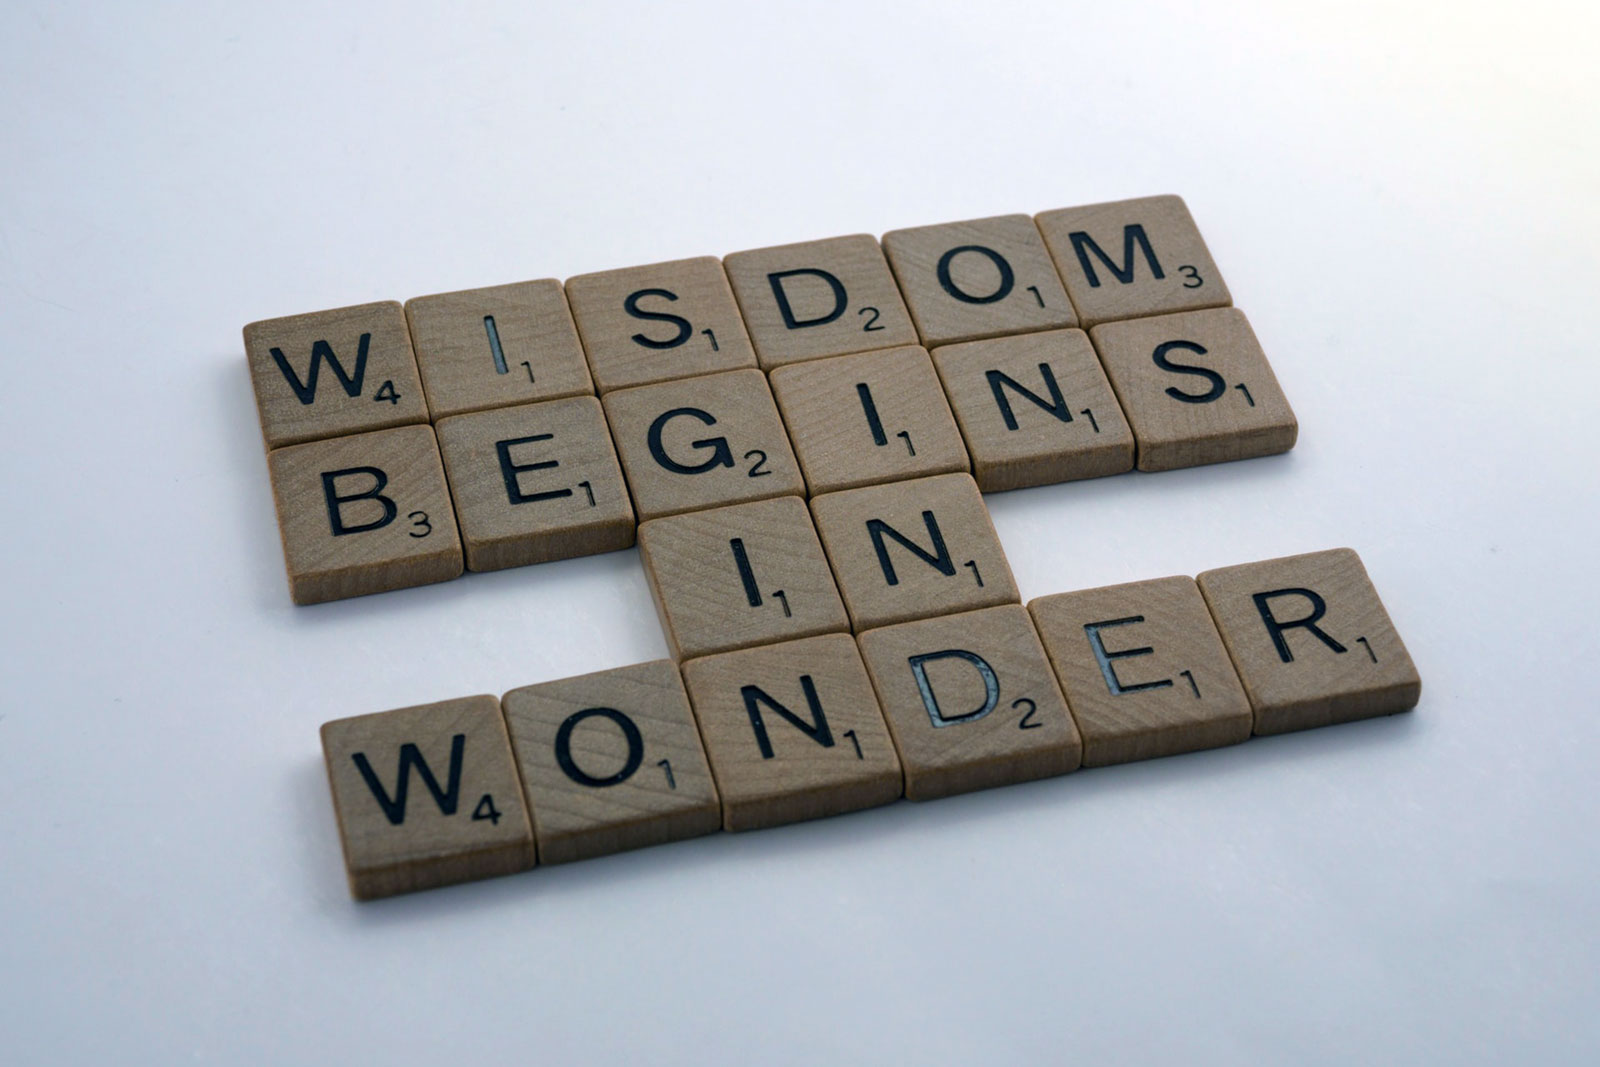 "wisdom begins in wonder" escrito com peças de madeira